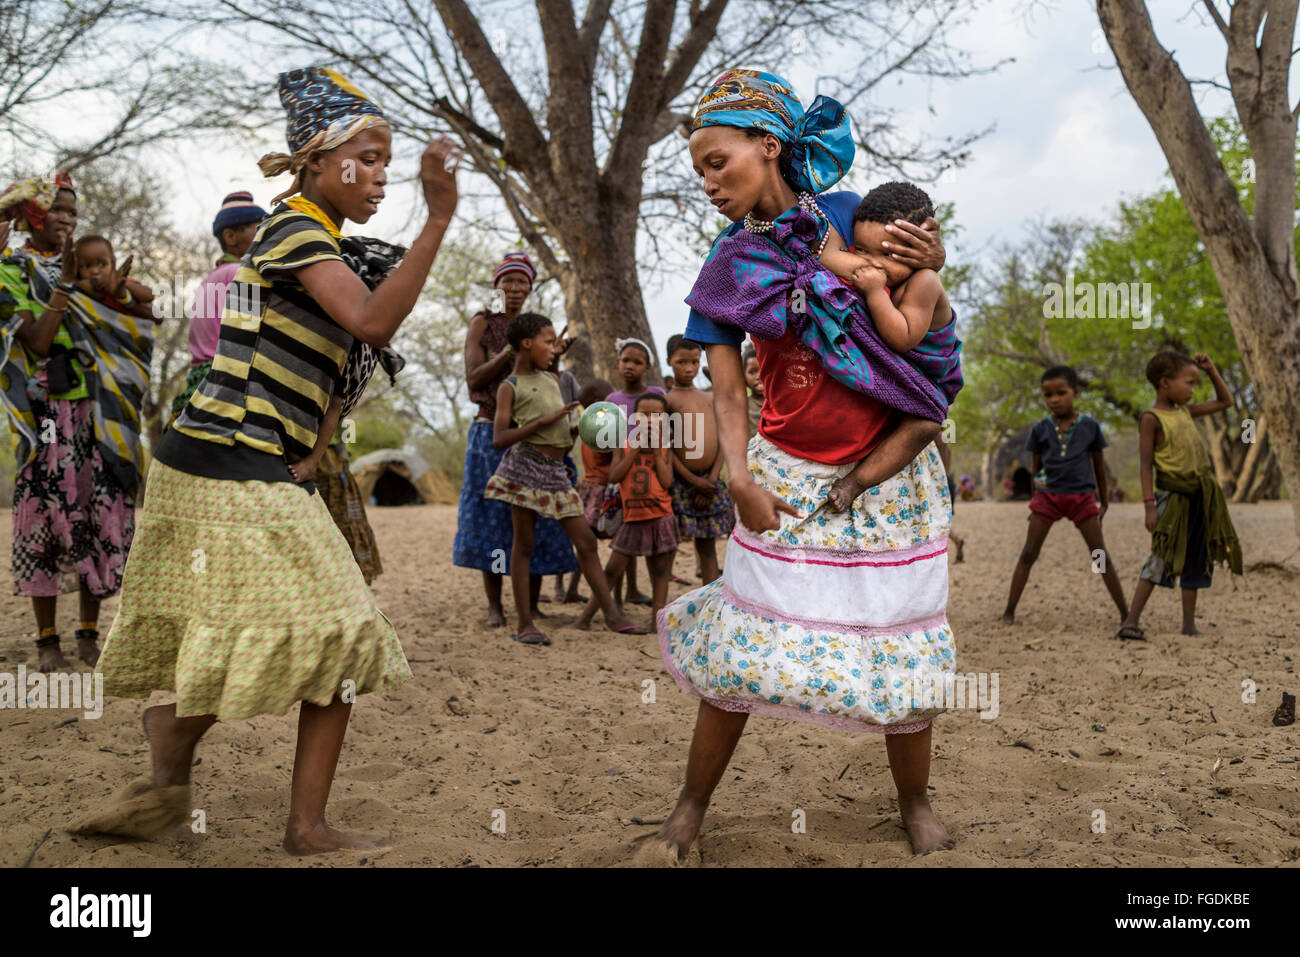 Groupe de personnes de la tribu San joue un jeu avec un fruit appelé 'Monkey orange' dans un village éloigné du désert du Kalahari. Banque D'Images